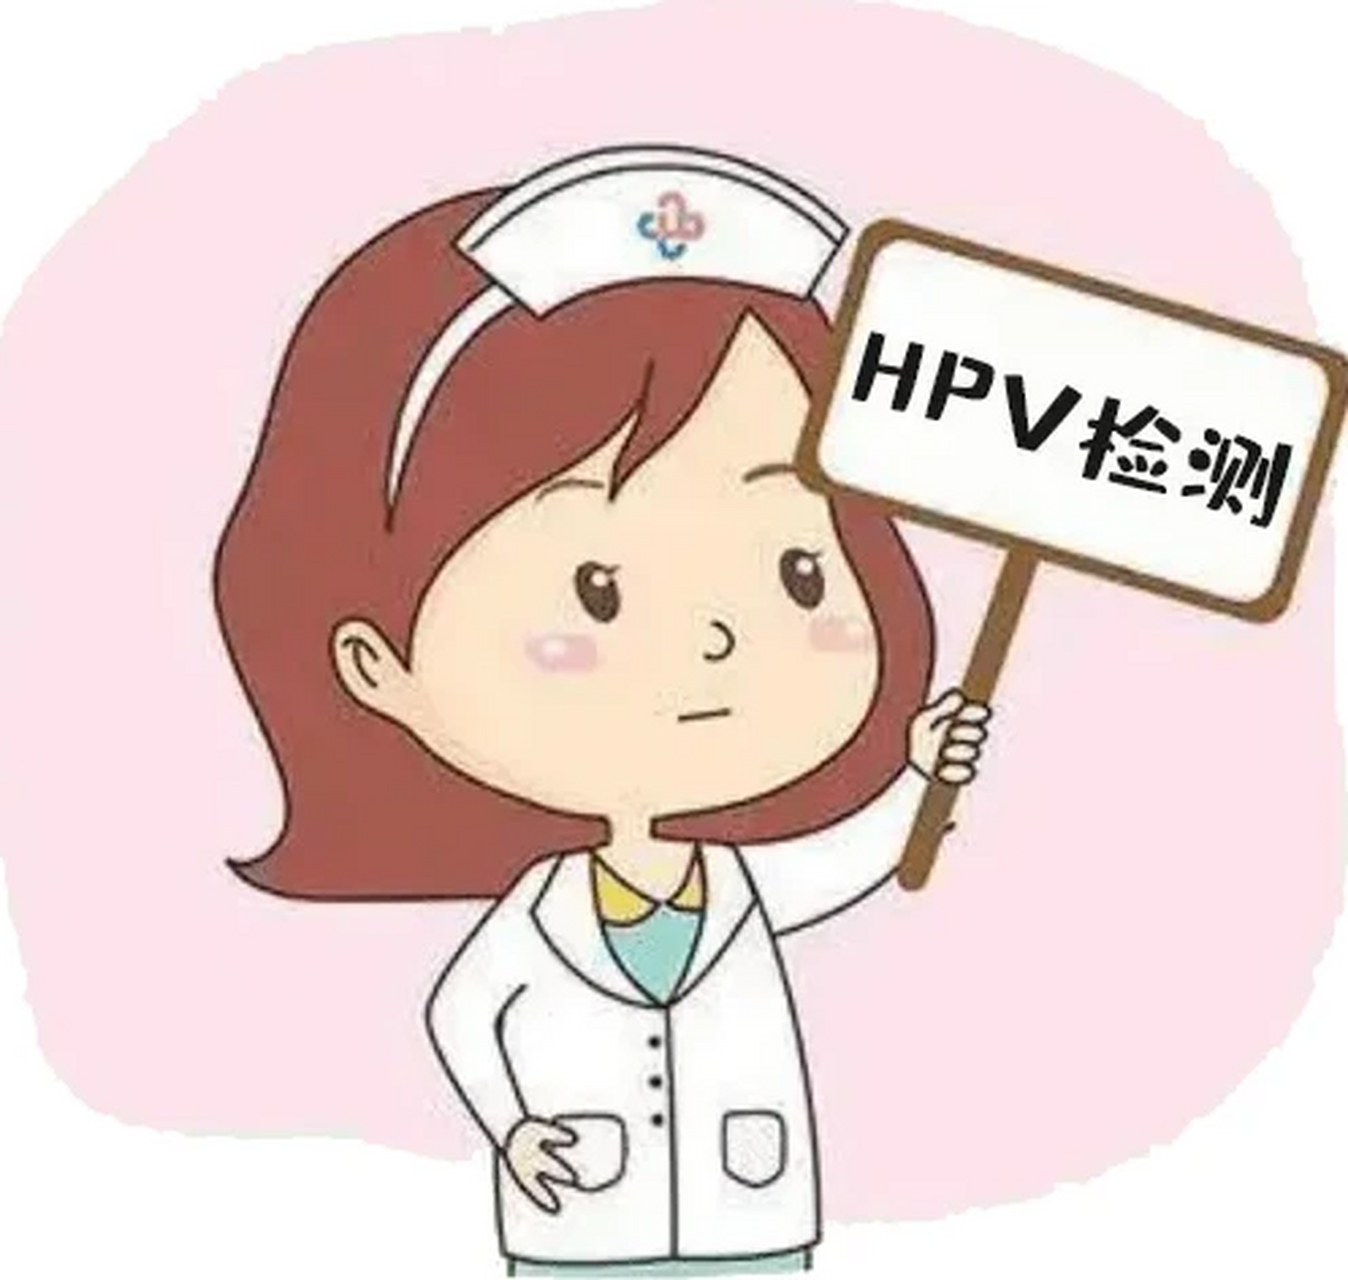 人类乳头瘤病毒(hpv)是一种常见的性传播病毒,可以导致多种疾病